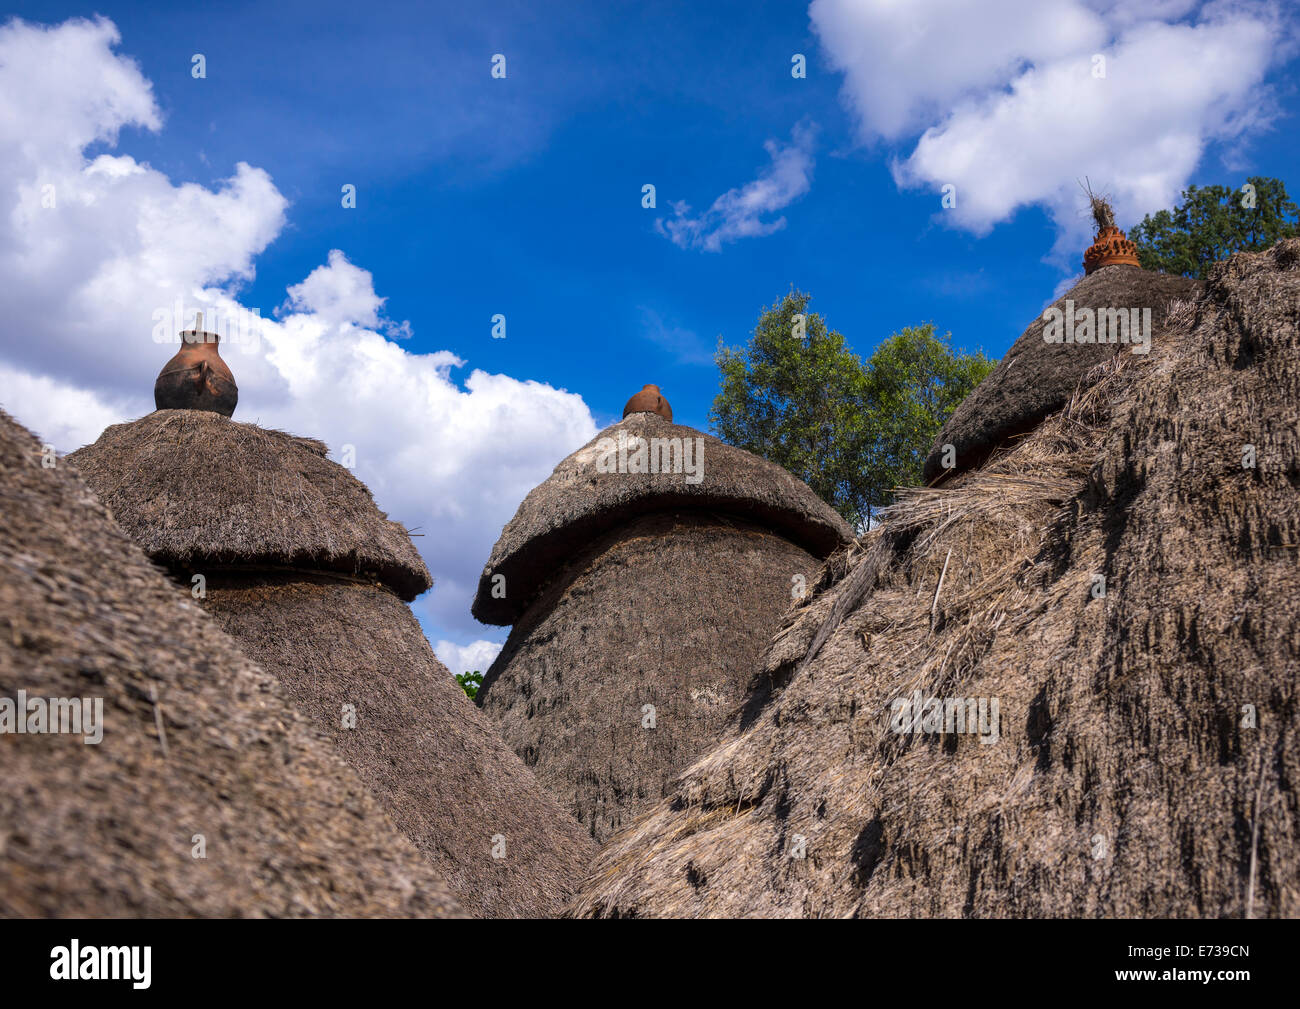 Tribu Konso Maisons traditionnelles avec des pots sur le dessus, Konso, vallée de l'Omo, Ethiopie Banque D'Images